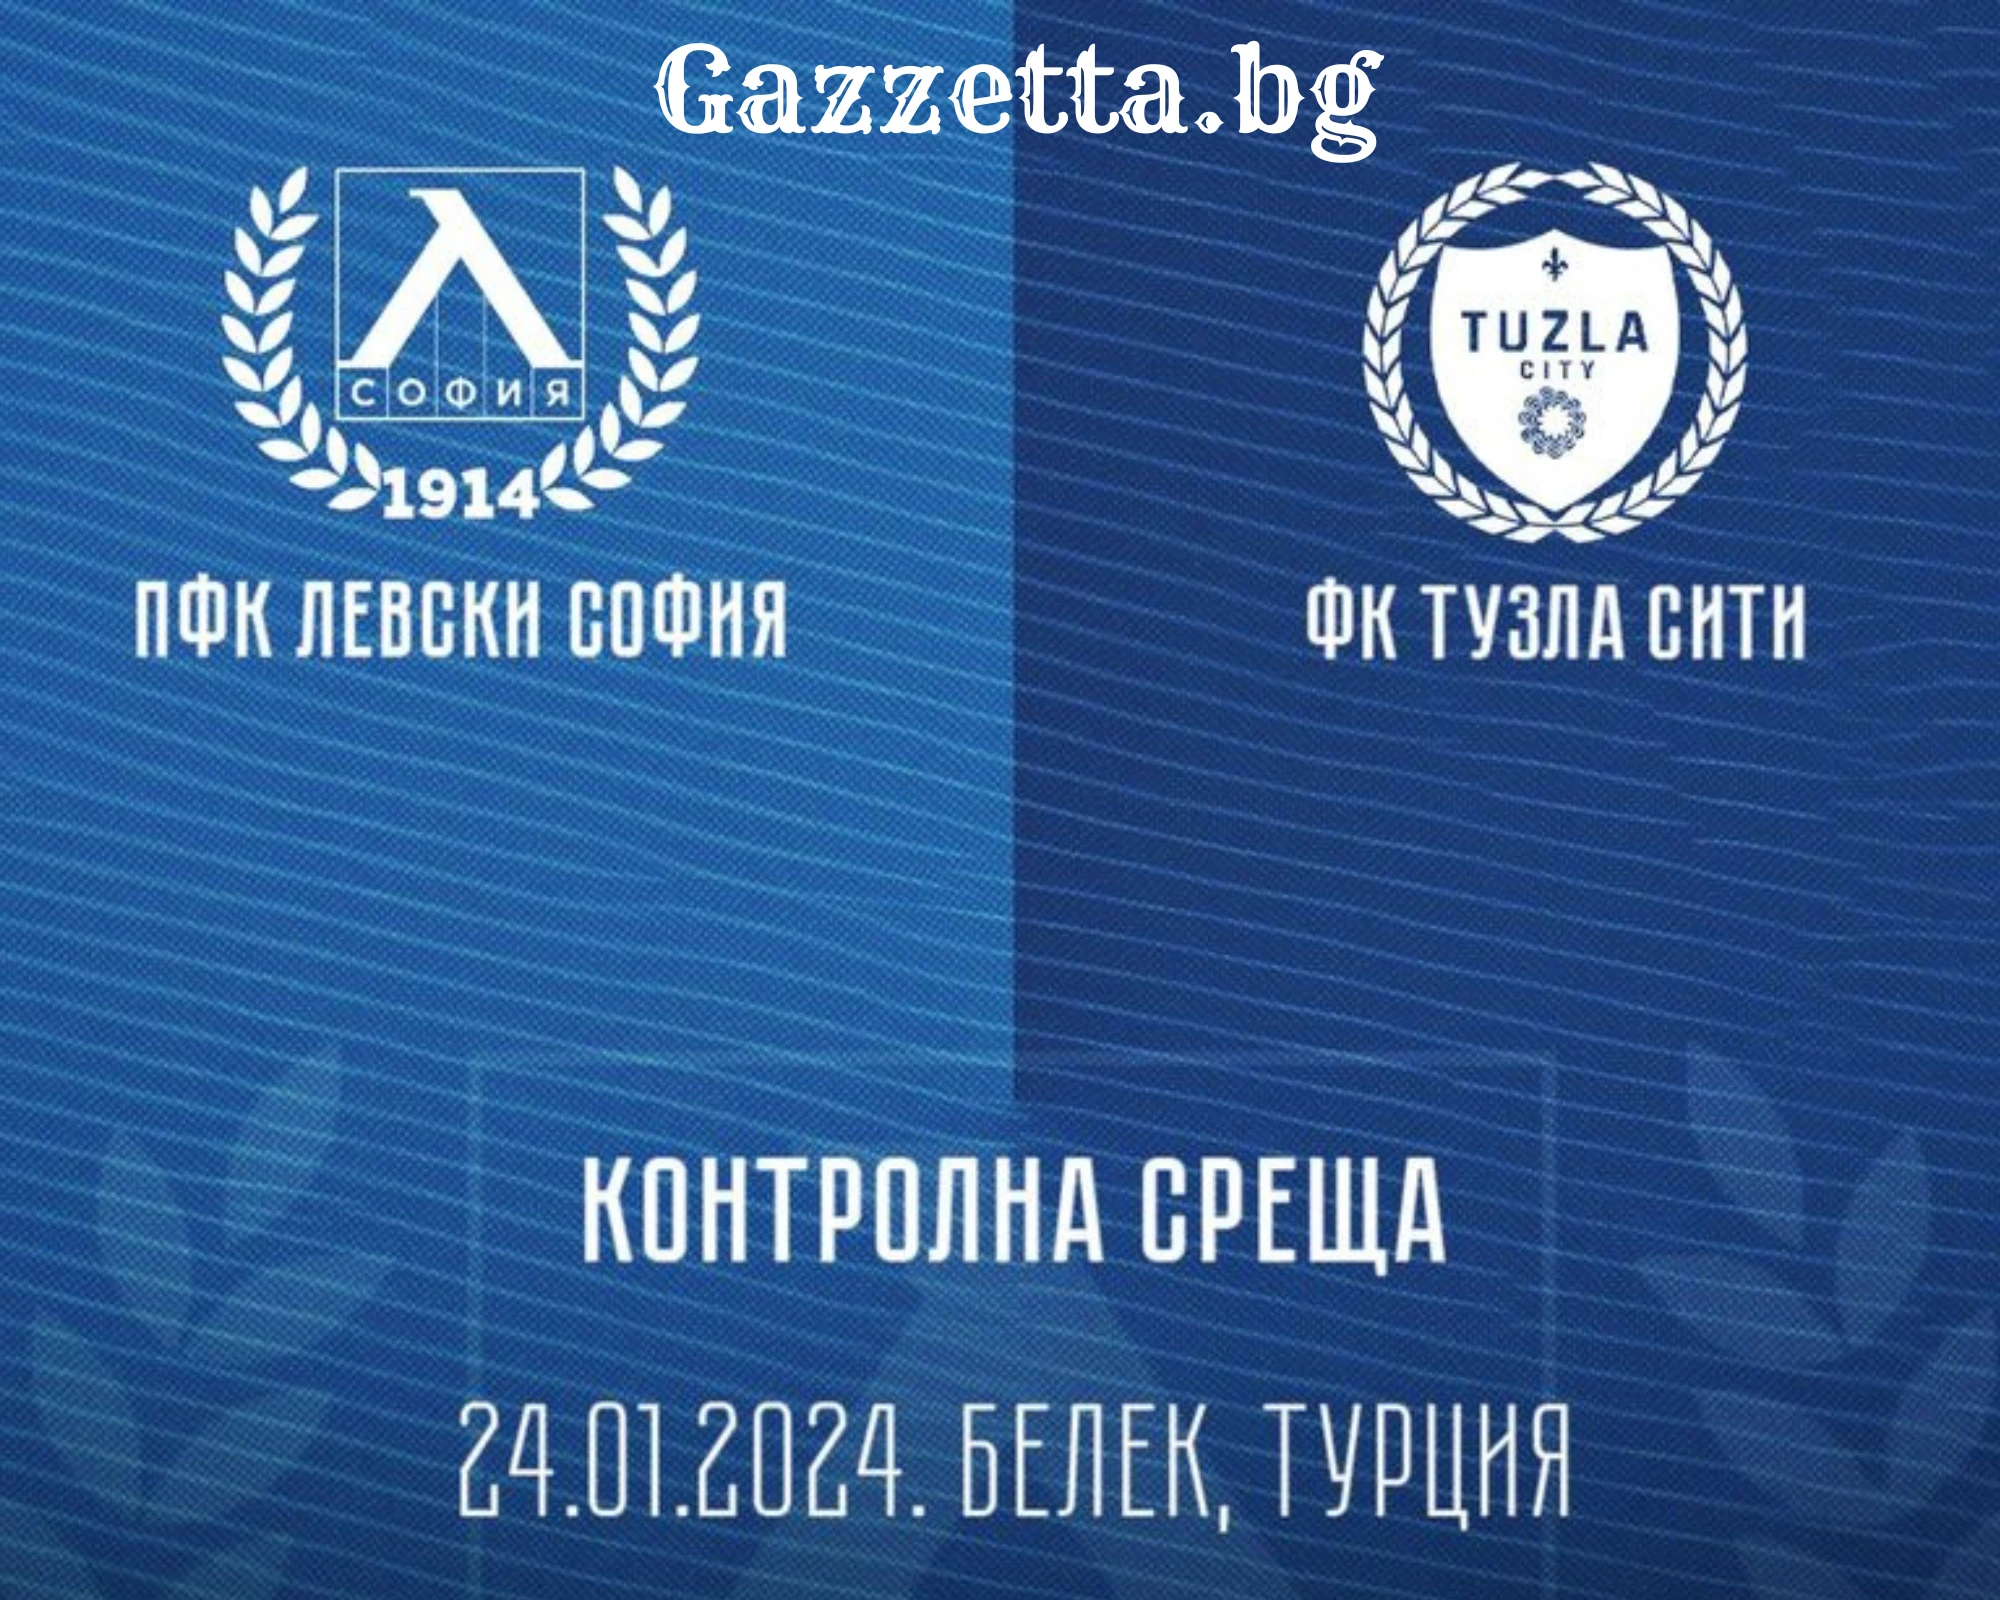 Левски се изправя срещу босненския Тузла Сити в четвъртата си контрола 